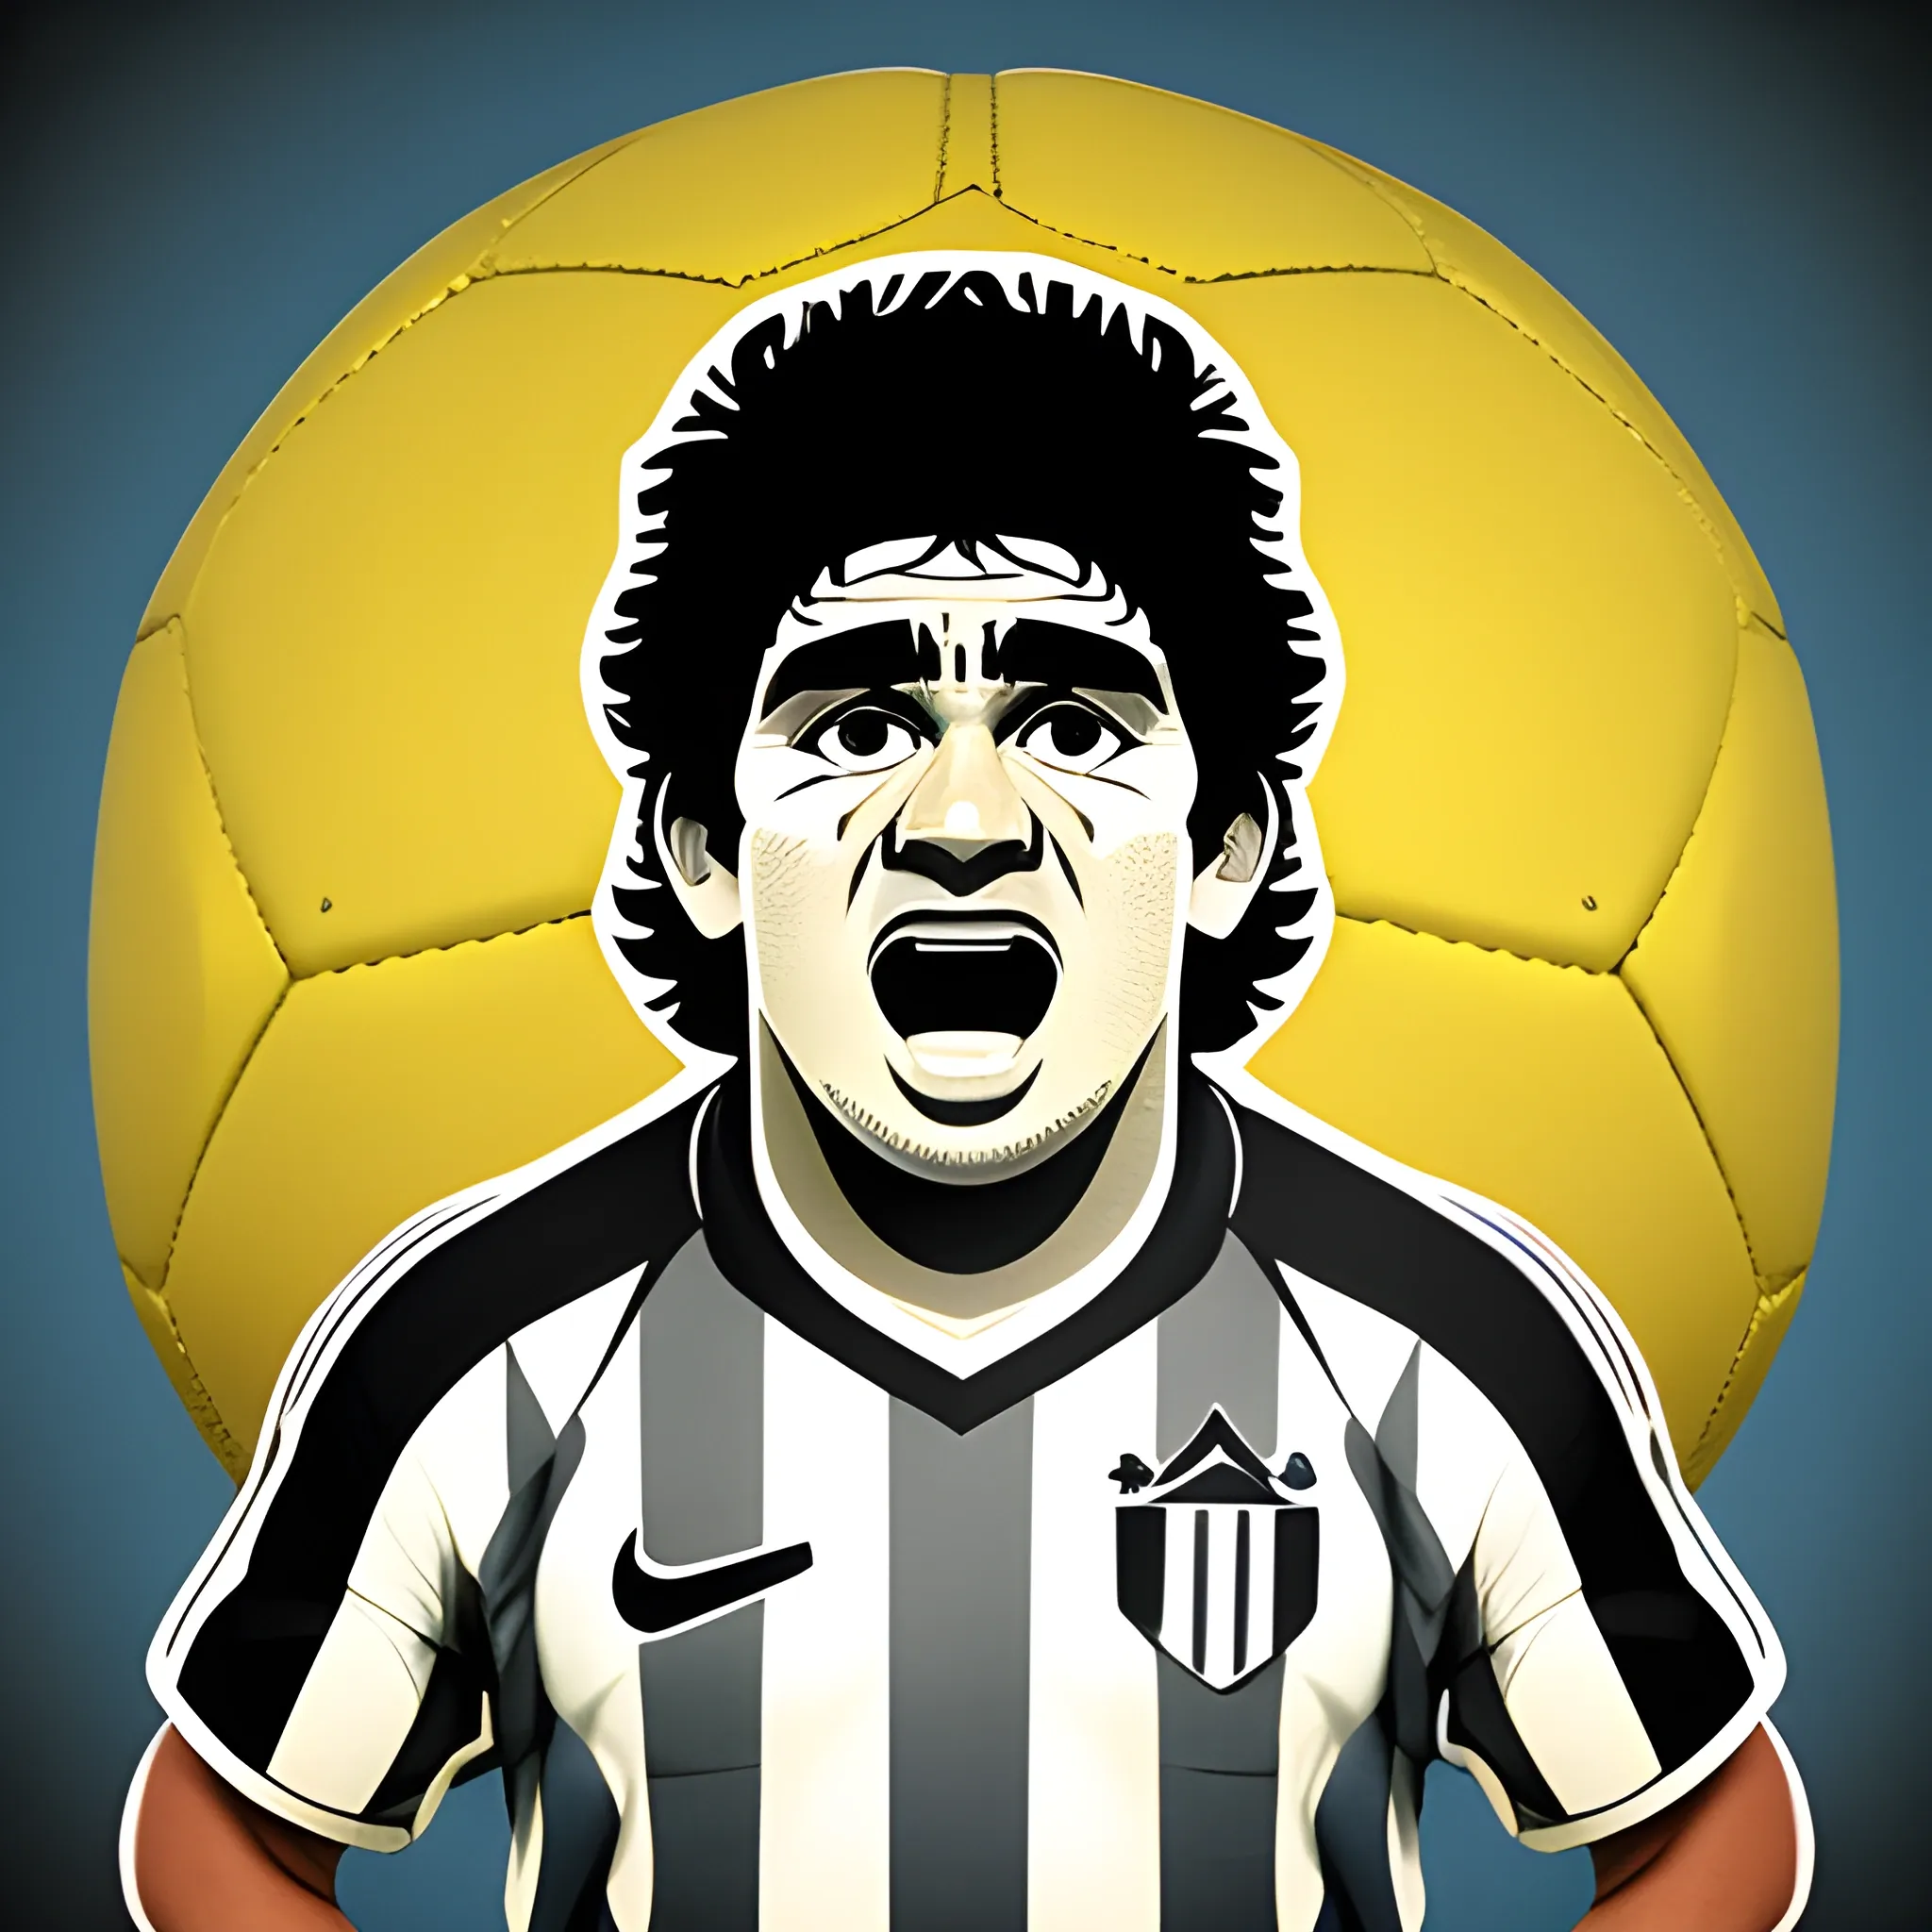 Character, soccer ballon, Maradona face. Toon style